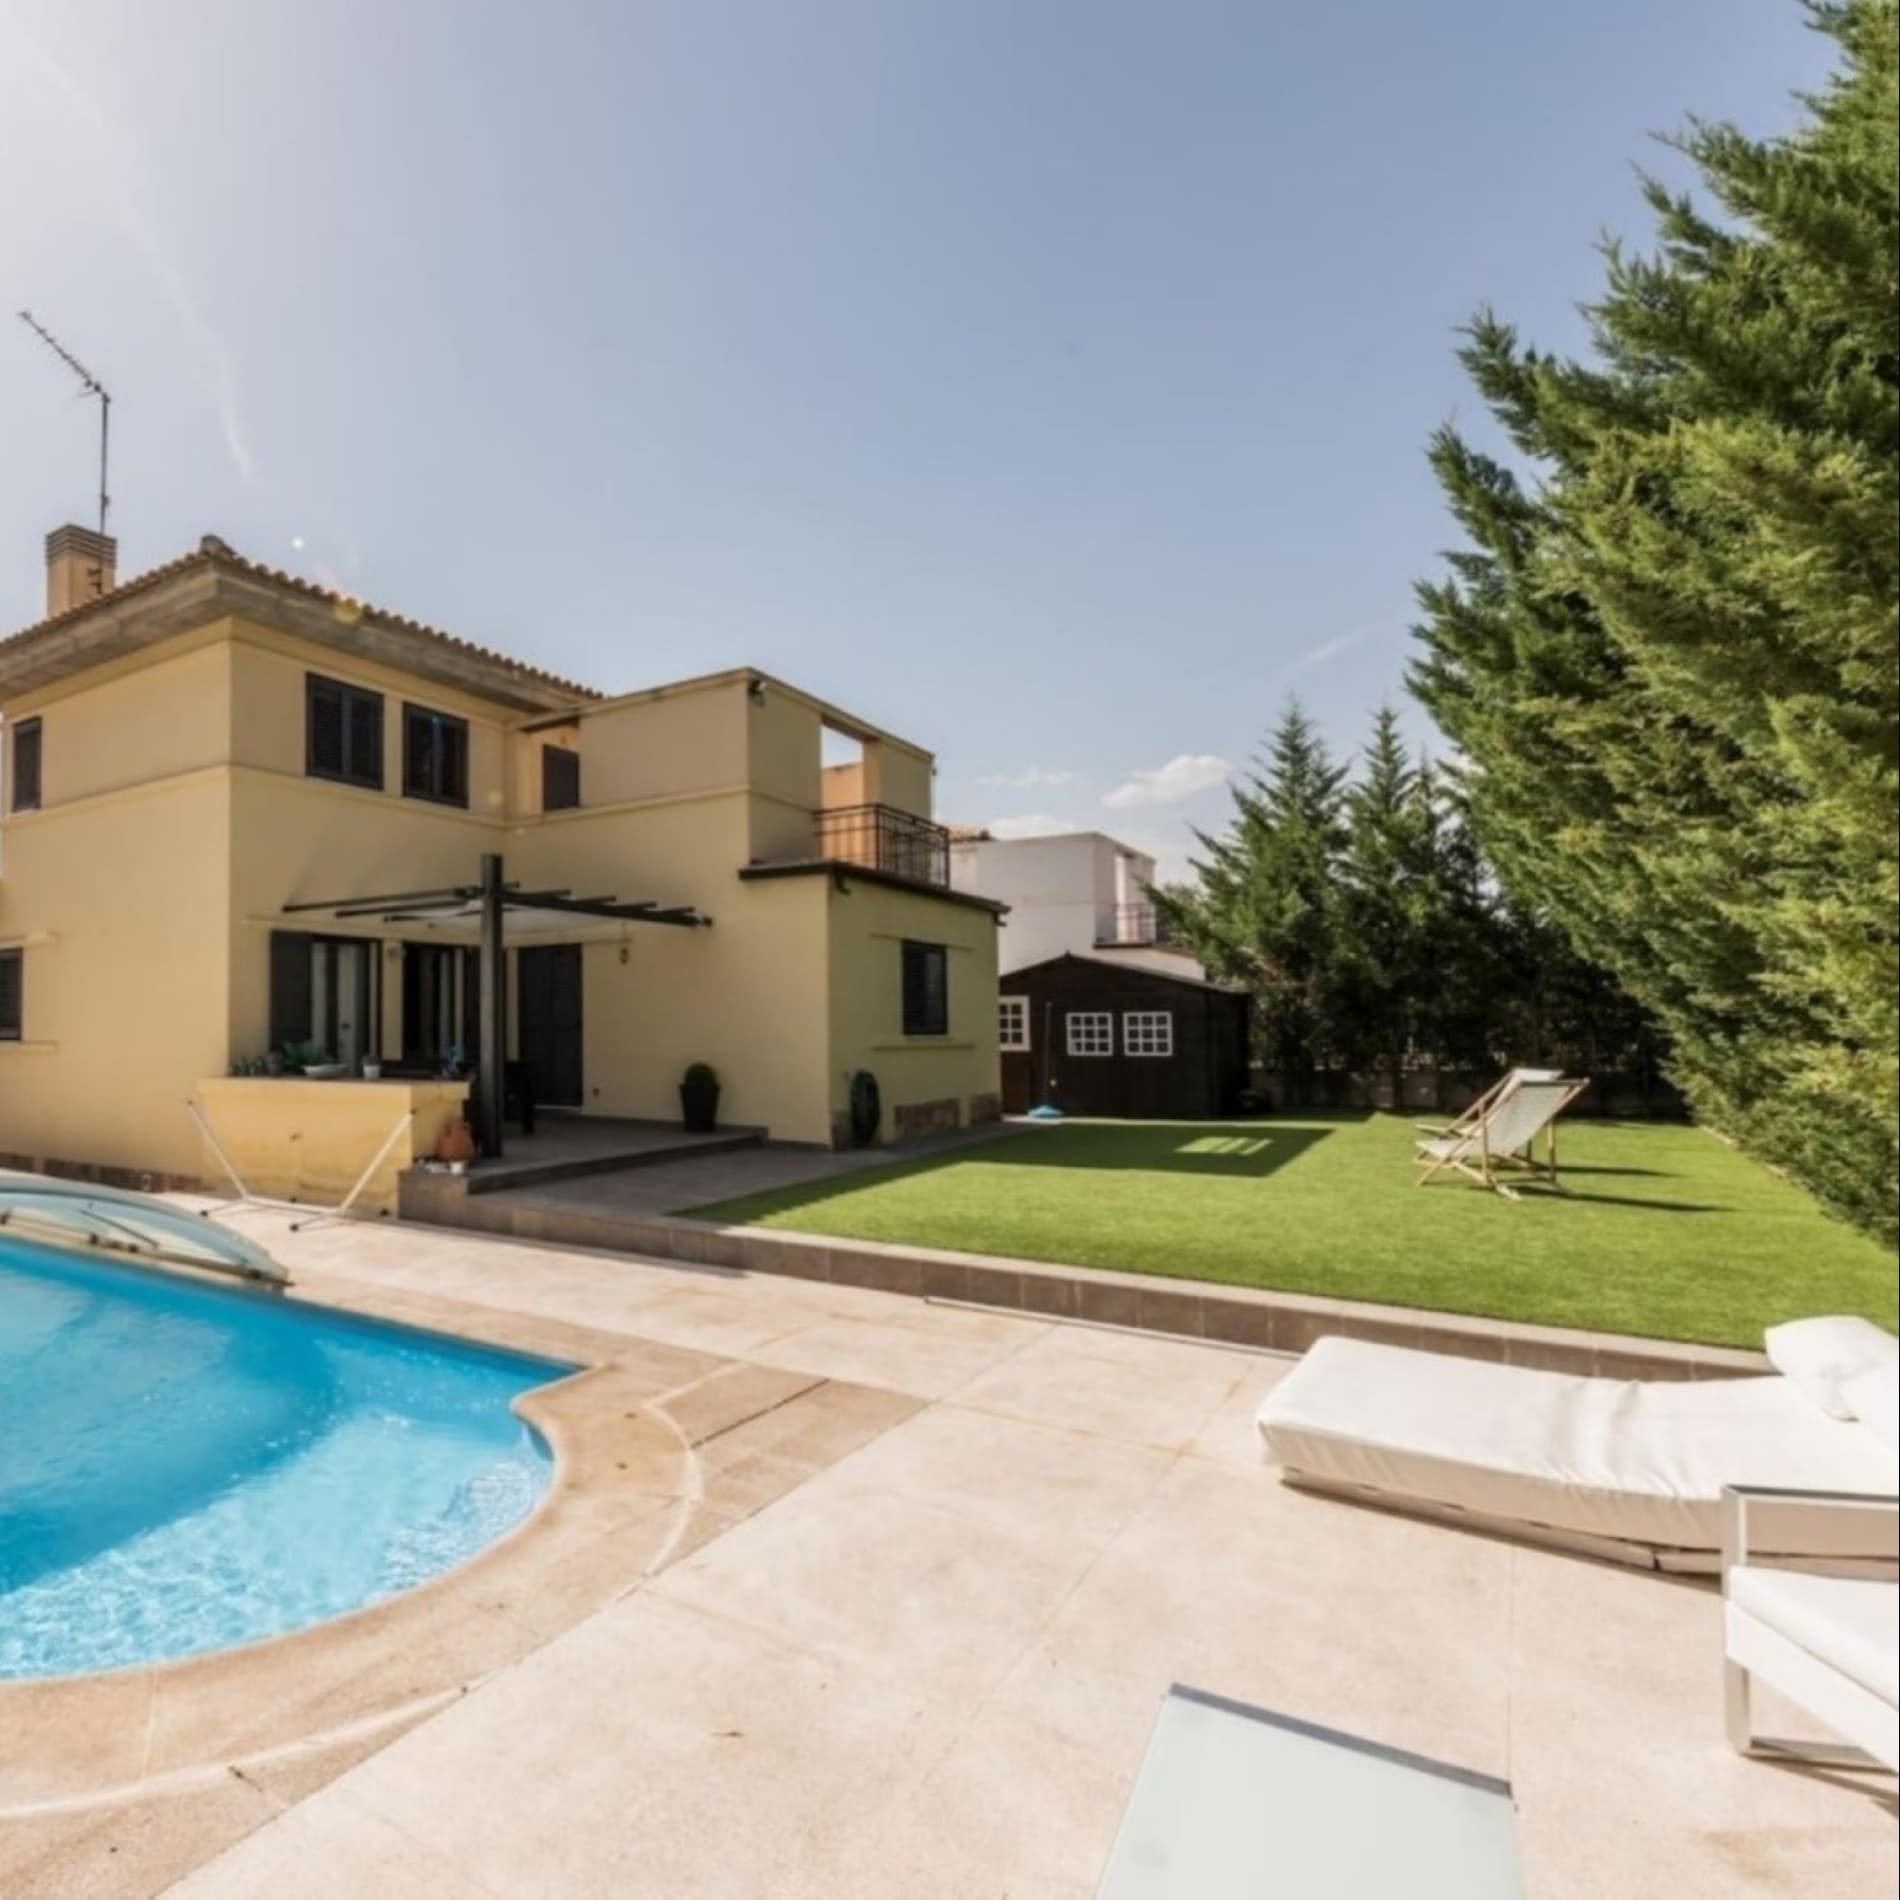 Gran casa rural en Madrid, con piscina cubierta y jardín